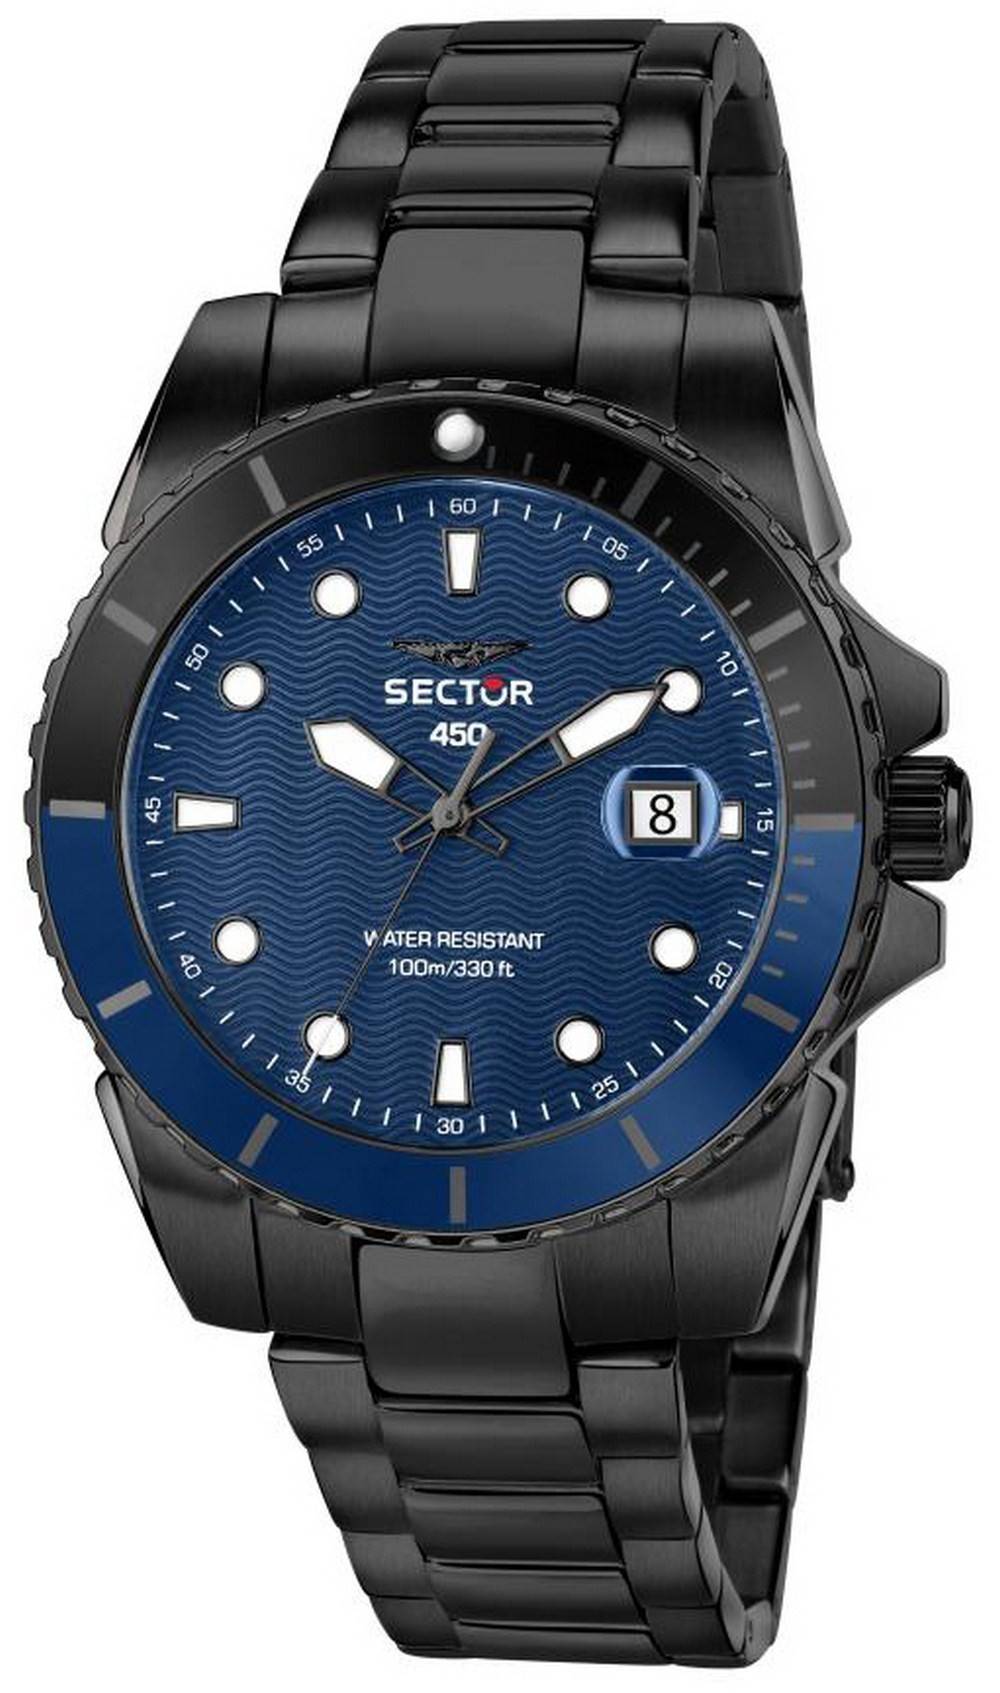 Sector 450 Blue Matt Dial Stainless Steel Quartz R3253276001 100M Men's Watch